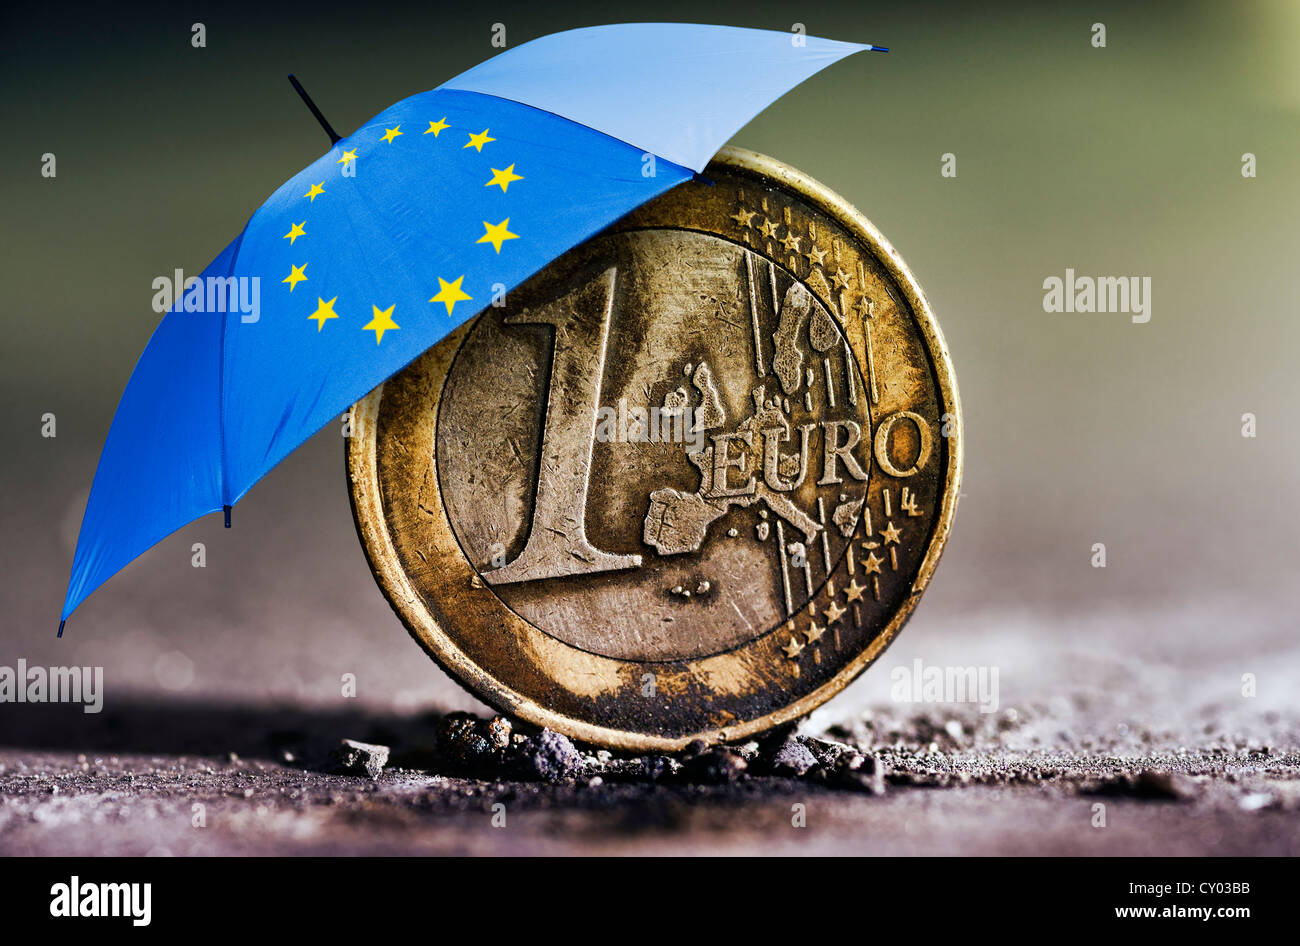 Verbrannte 1-Euro-Münze in der Asche unter einem Regenschirm mit den Stars der Europäischen Union, symbolisches Bild für die Euro-Krise, Euro-Rettungsschirm Stockfoto